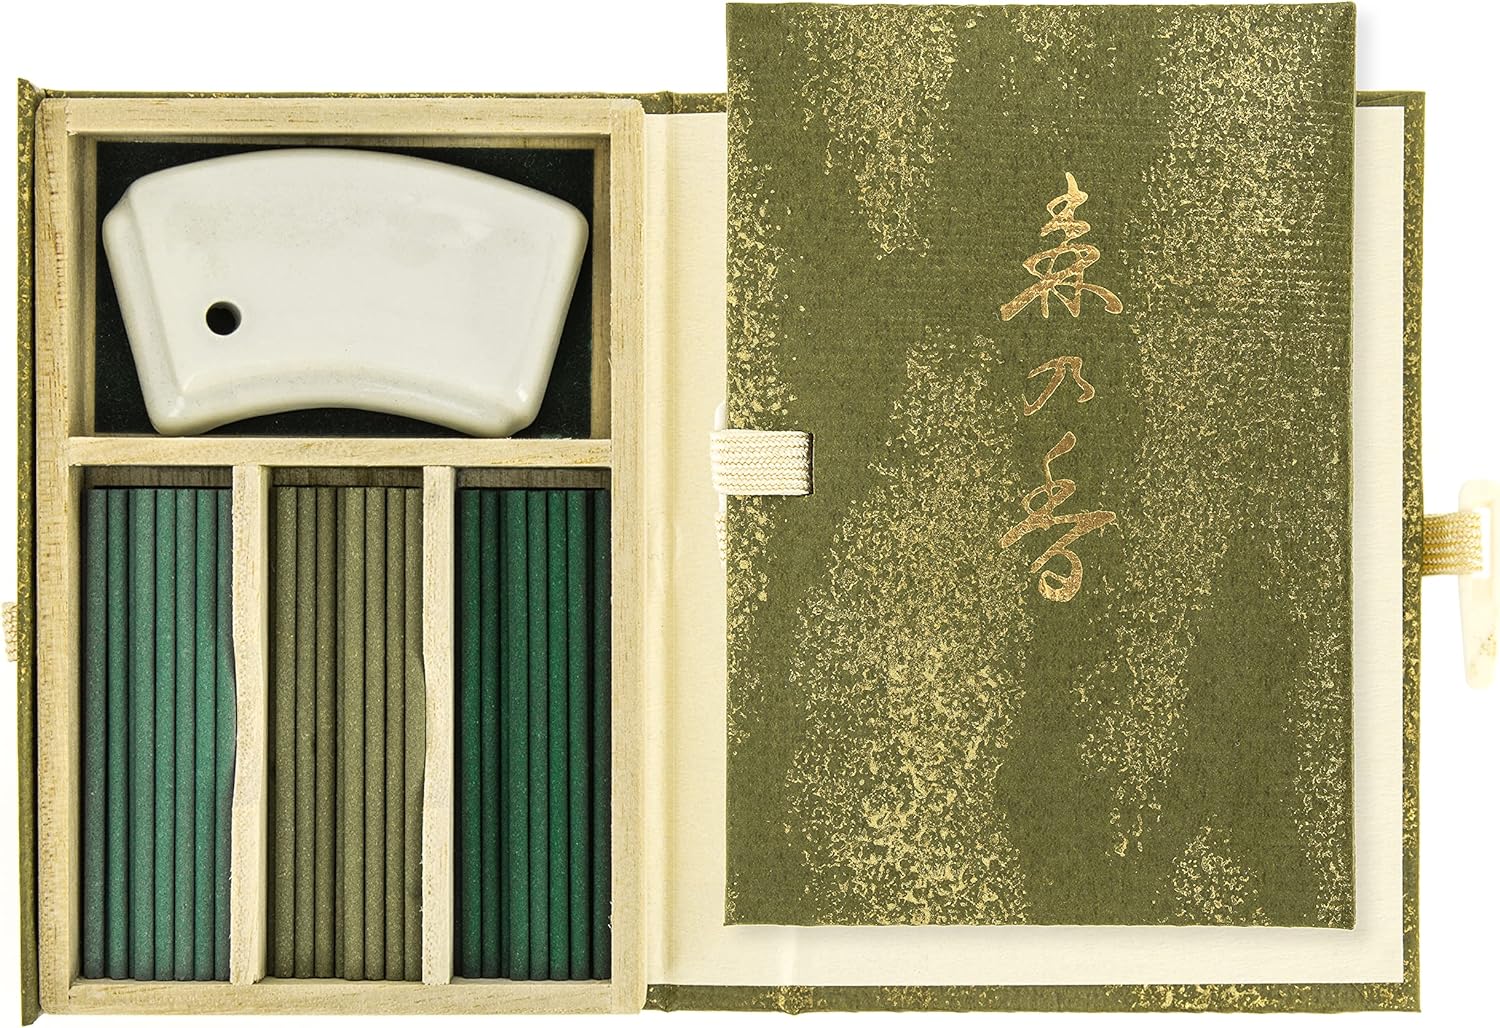 NipponKodo 日本香堂森之香線香書本型包裝60根入附香立